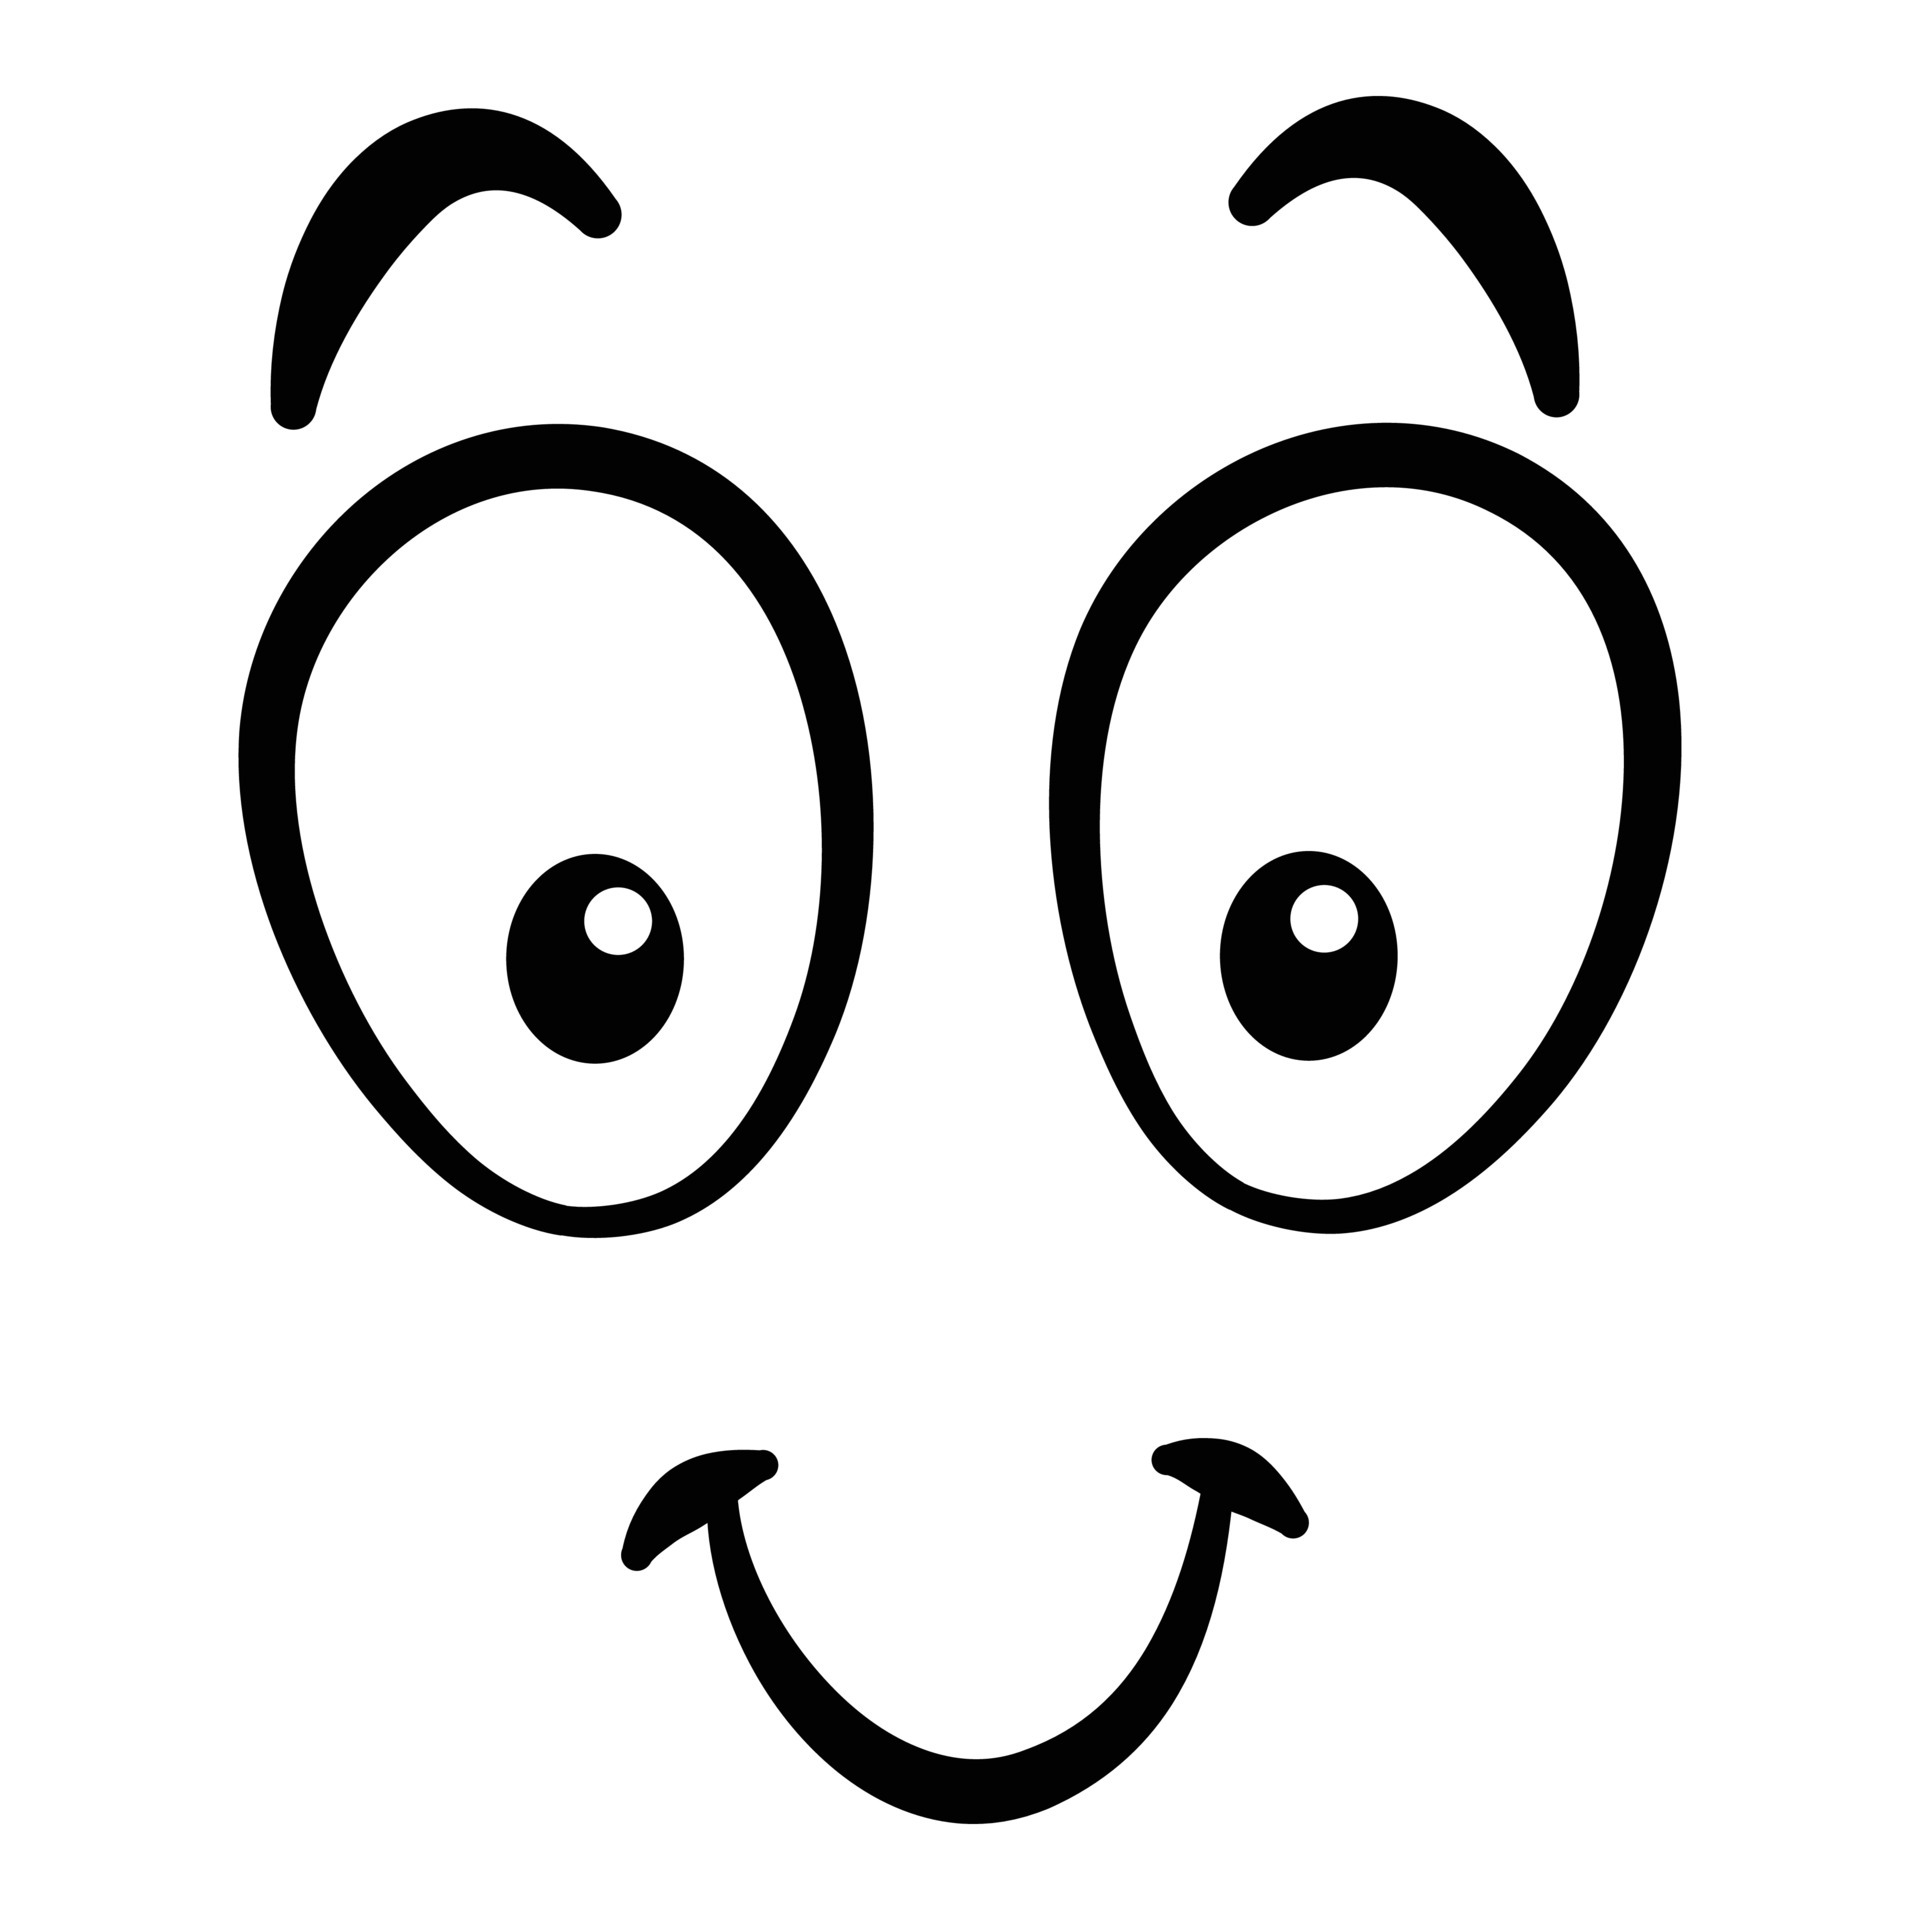 rosto de desenho animado. boca e olhos expressivos, sorriso, choro e  expressão facial de personagem surpresa. emoção cômica da caricatura ou  doodle emoticon. ícone de ilustração vetorial isolado 4505005 Vetor no  Vecteezy